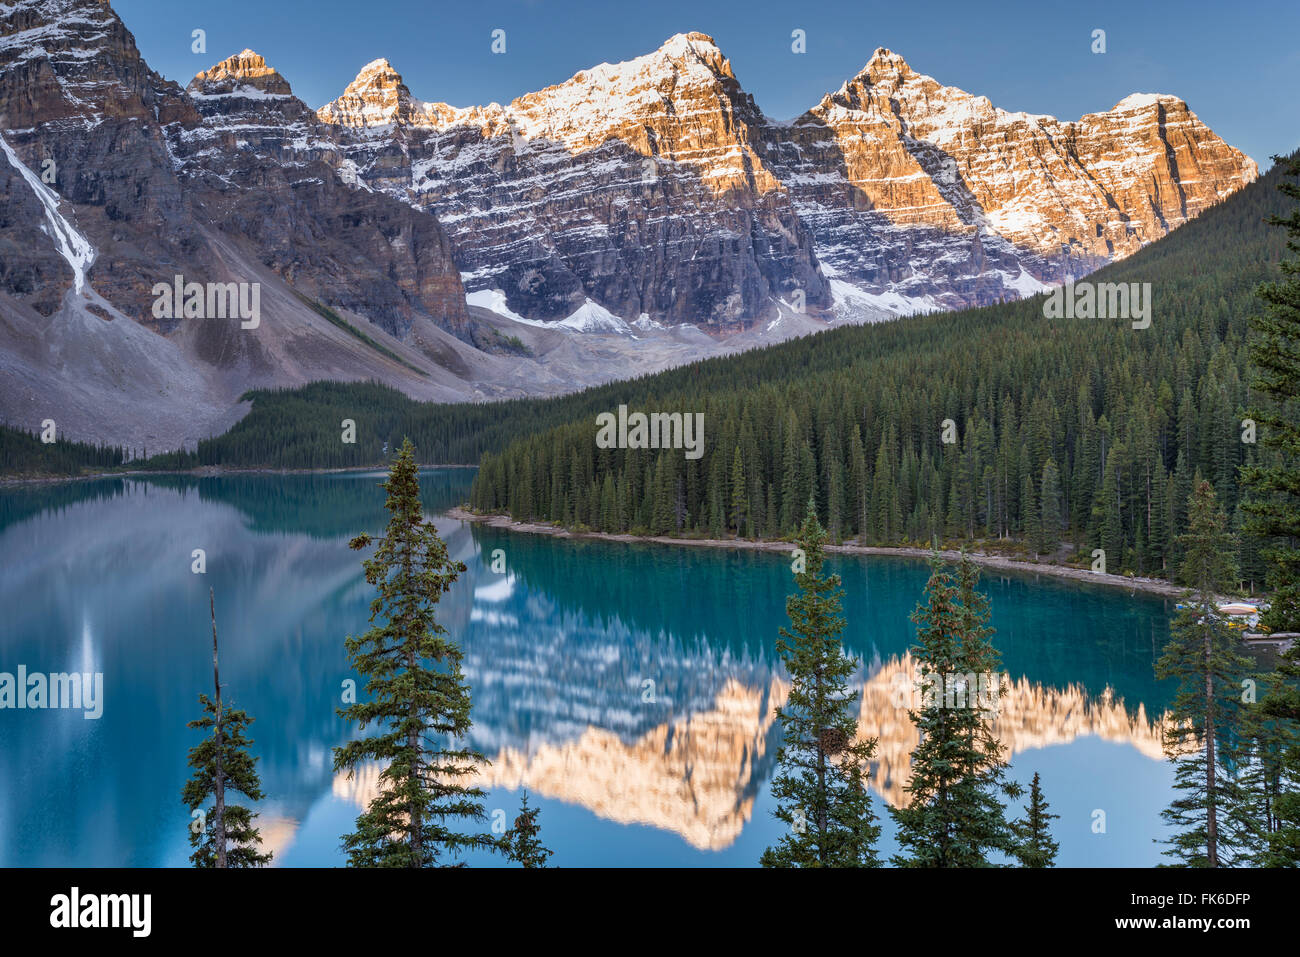 El lago Moraine y el Valle de los Diez Picos, Rockies, el Parque Nacional Banff, Sitio del Patrimonio Mundial de la UNESCO, Alberta, Canadá Foto de stock